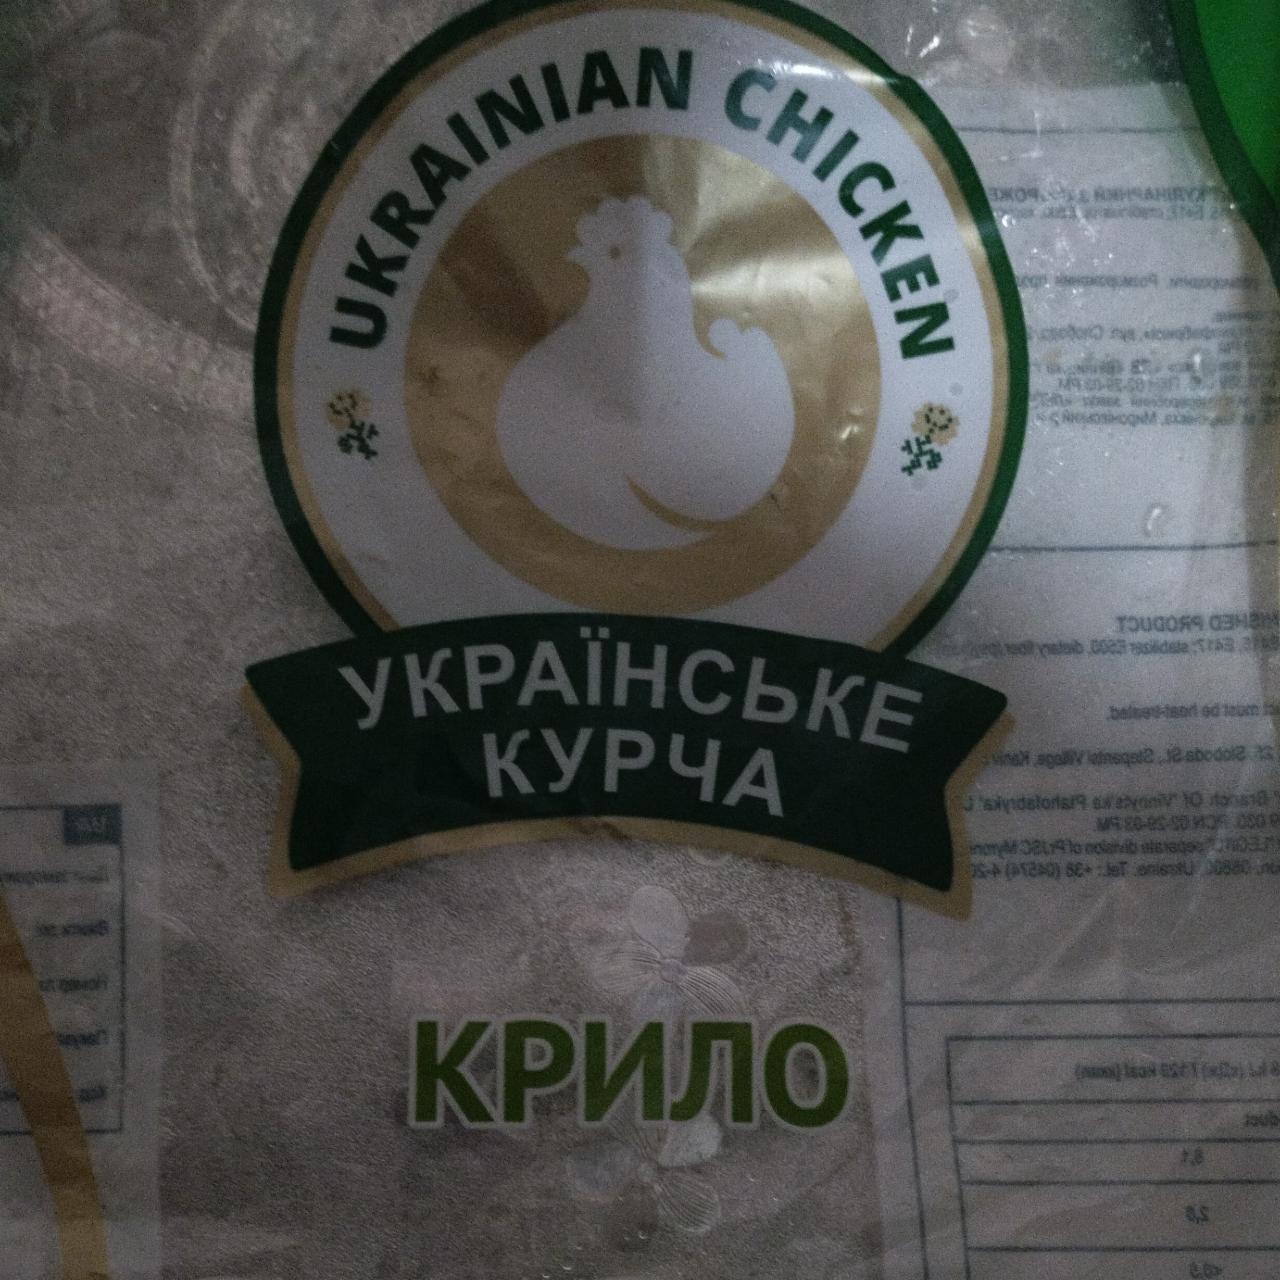 Фото - Крило куряче Українське курча